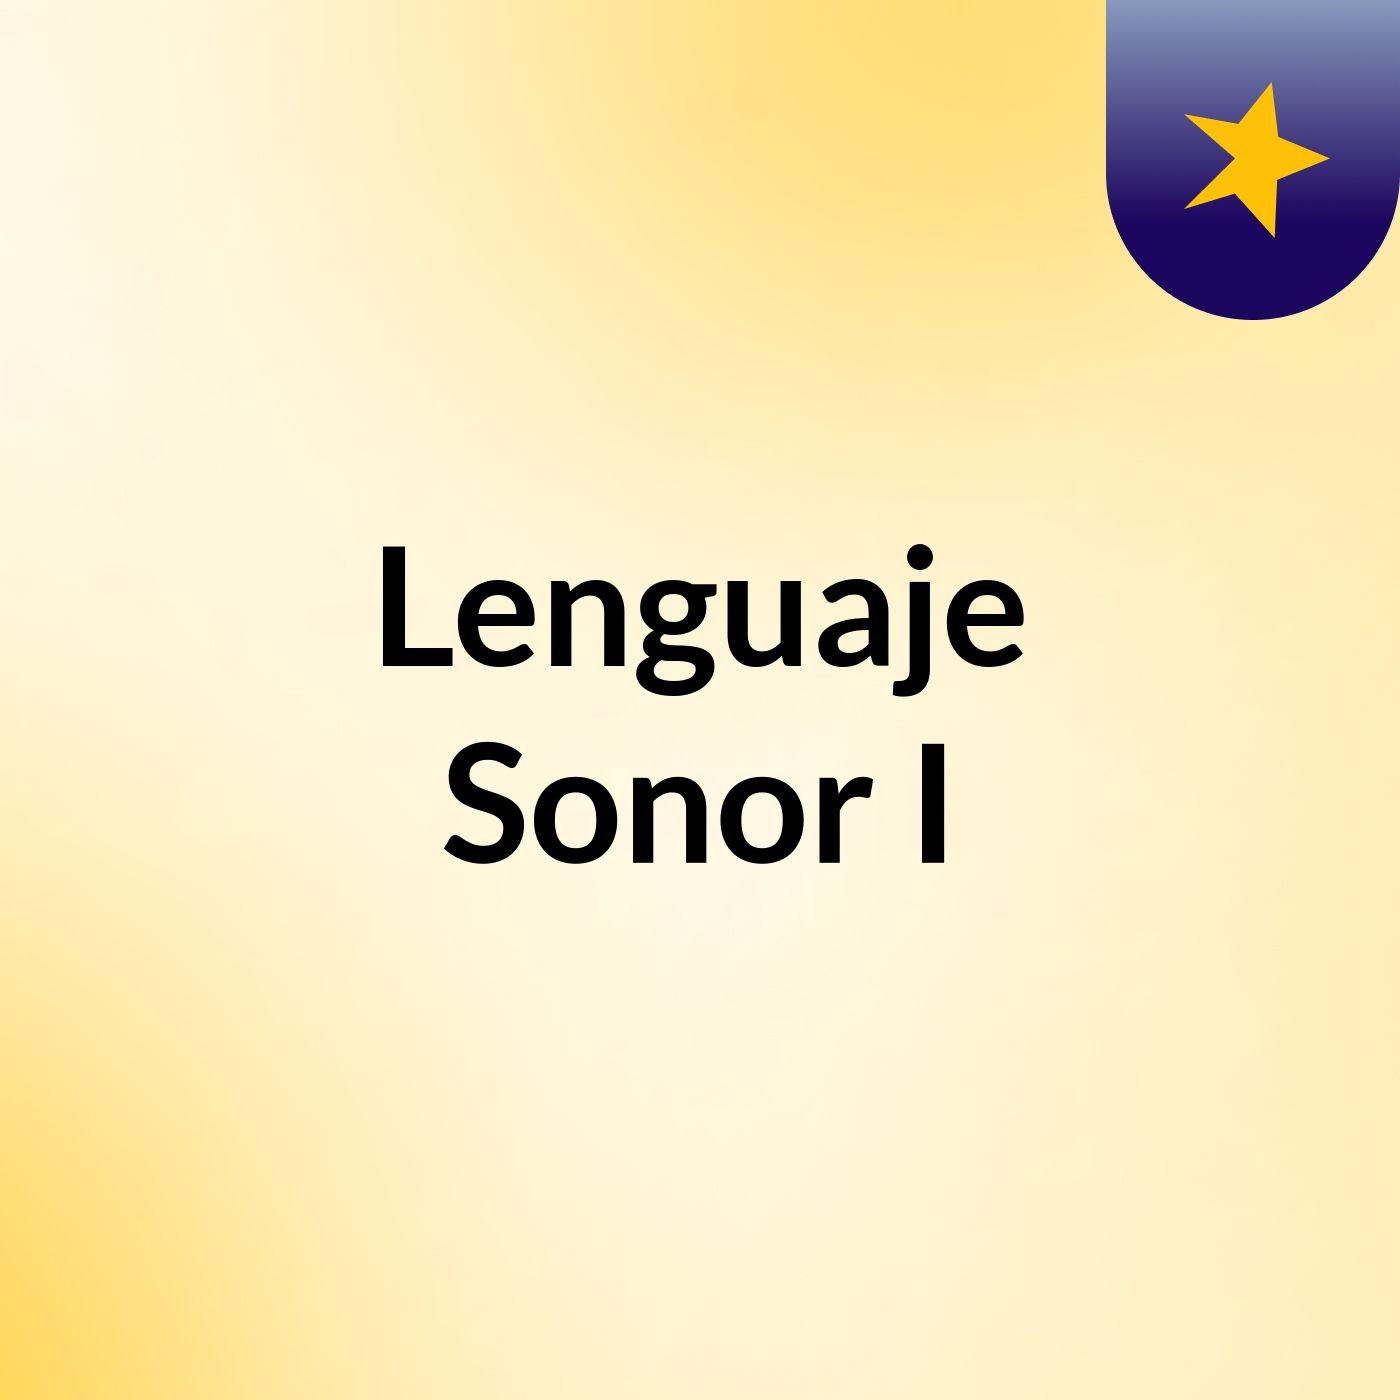 Lenguaje Sonor I